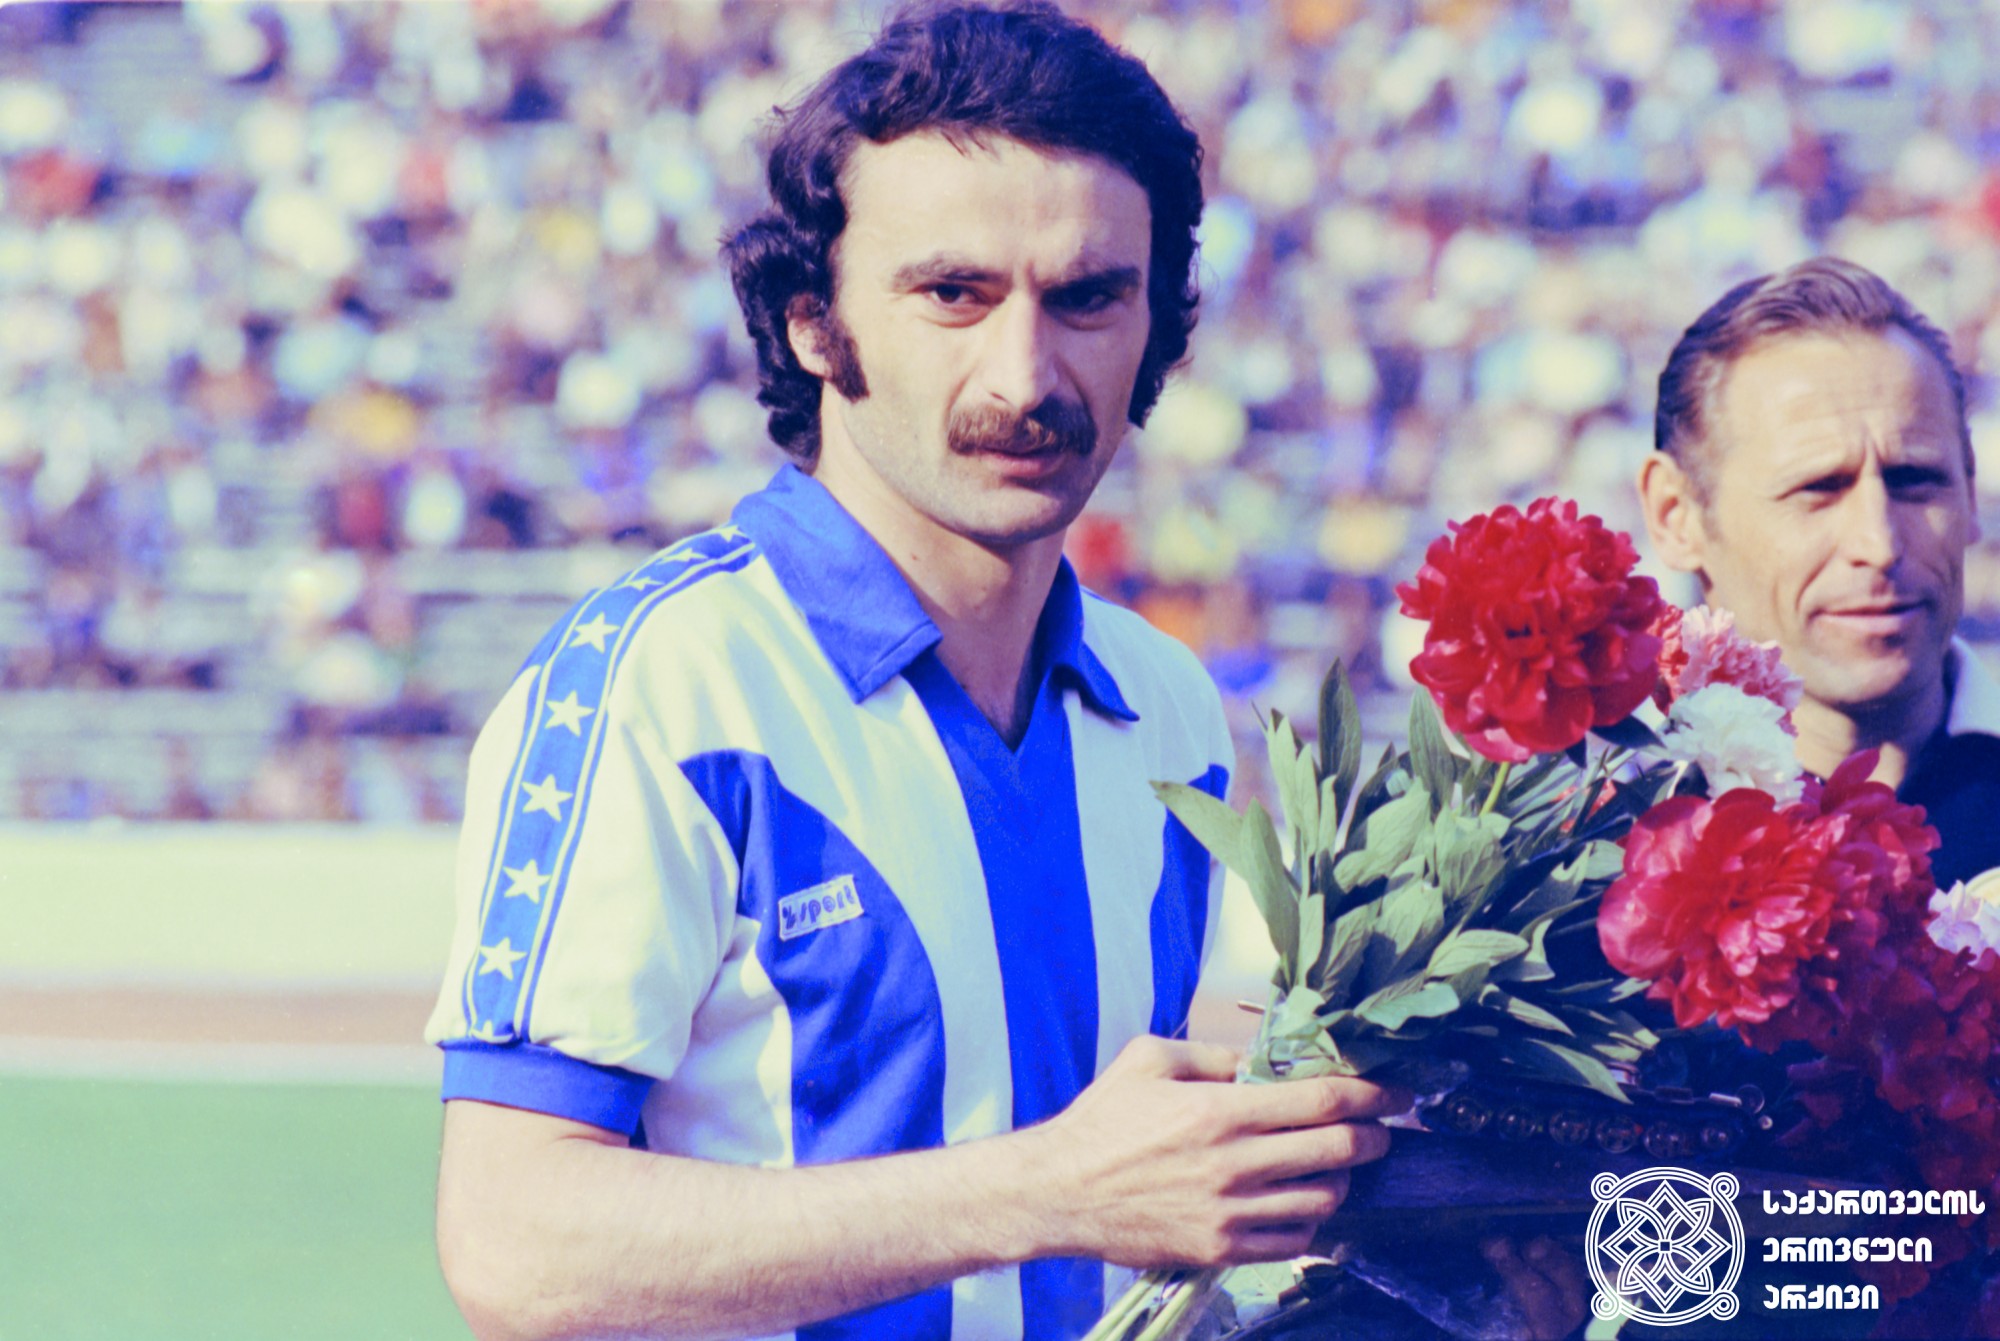 ალექსანდრე ჩივაძე. <br>
მალხაზ დათიკაშვილის ფოტო, 1984 წელი. <br>
XXII ოლიმპიური თამაშების მესამე პრიზიორი ფეხბურთში (1980 წელი, მოსკოვი). <br> 
Aleksandre Chivadze. <br>
Photo by Malkhaz Datikashvili, 1984. <br>
Third-prize winner of the XXII Olympic Games in Football (1980, Moscow).